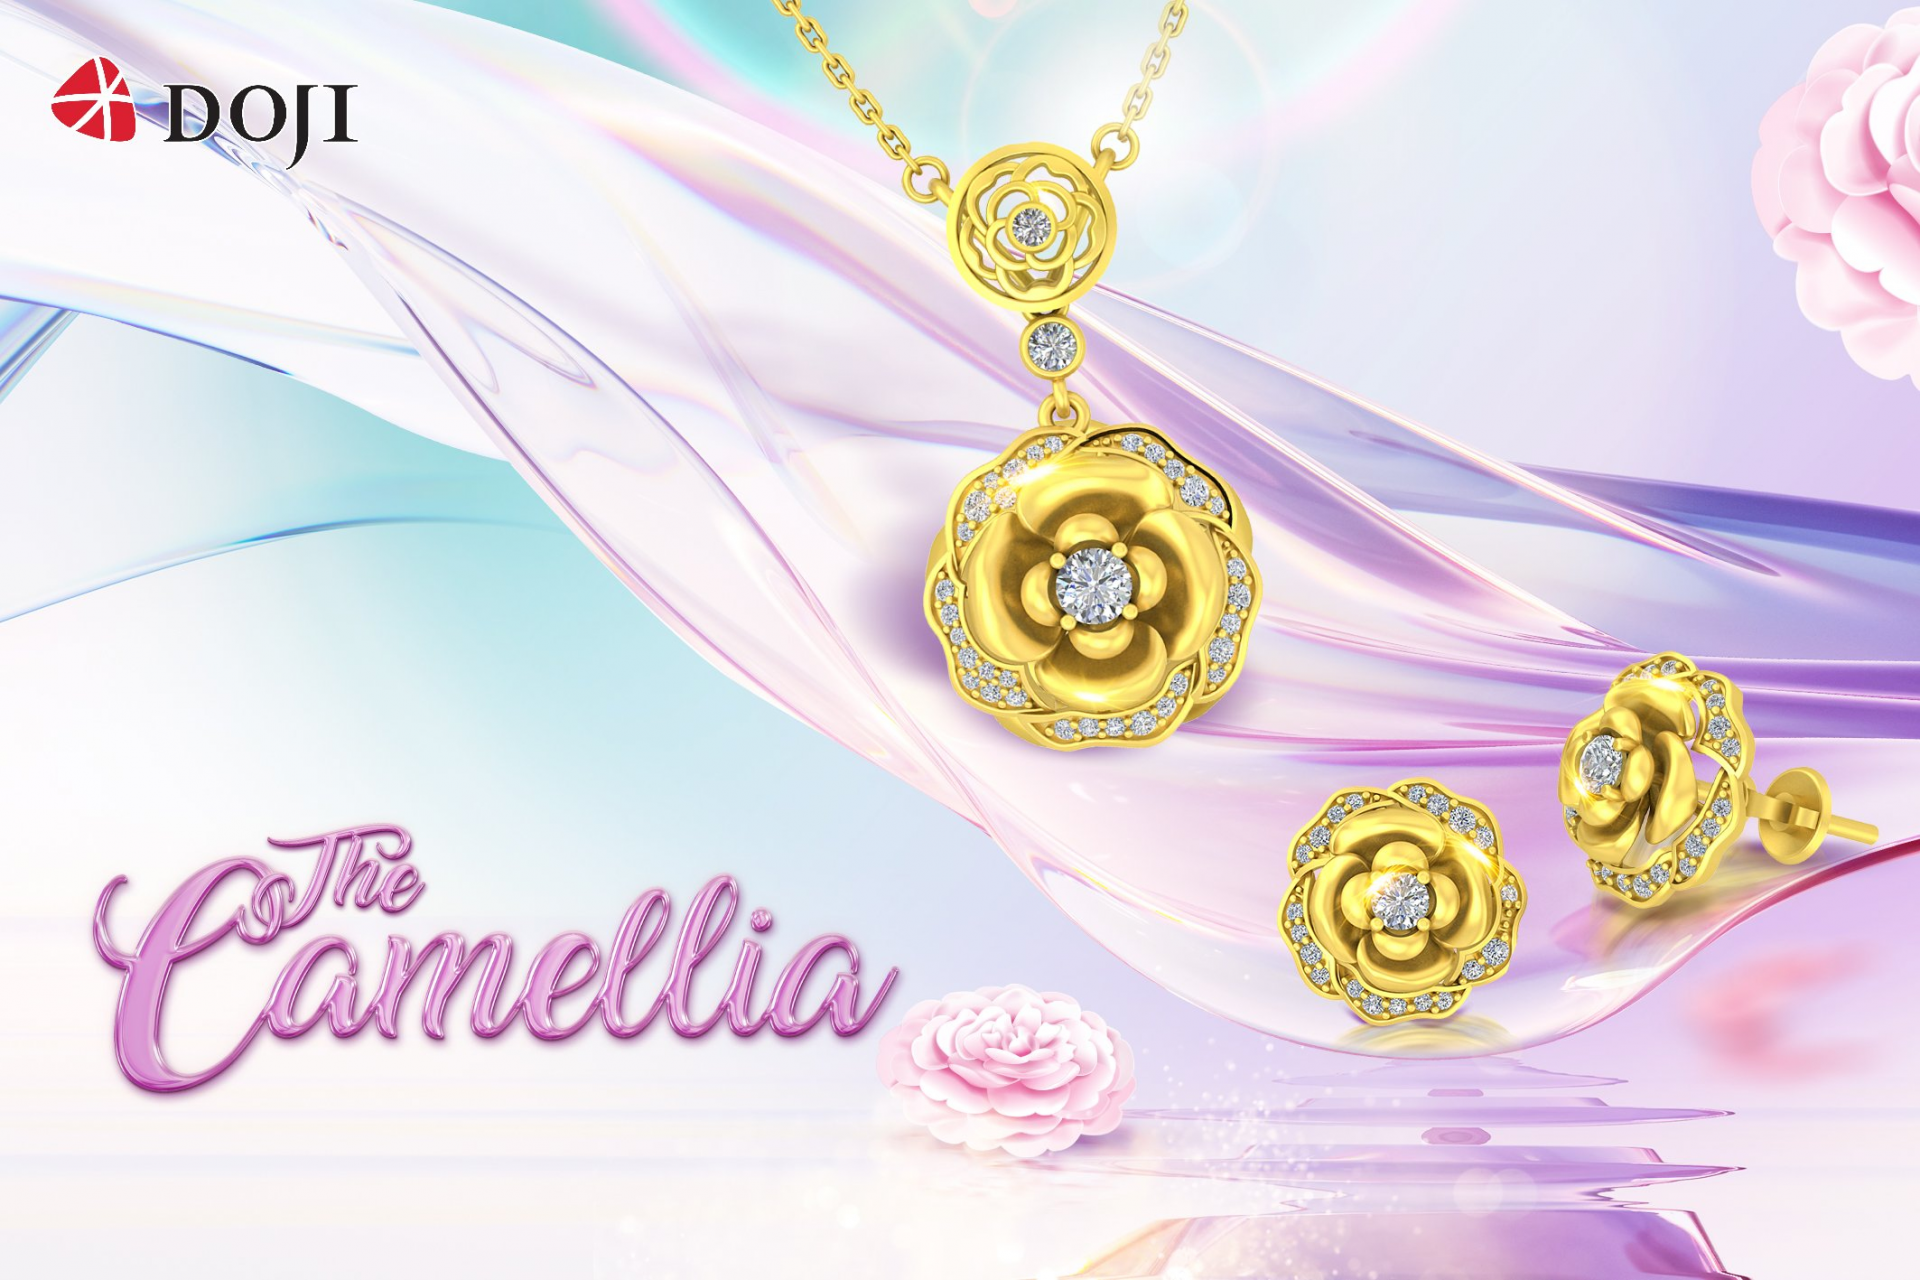 Cận cảnh thiết kế trong bộ sưu tập “The Camellia” của DOJI